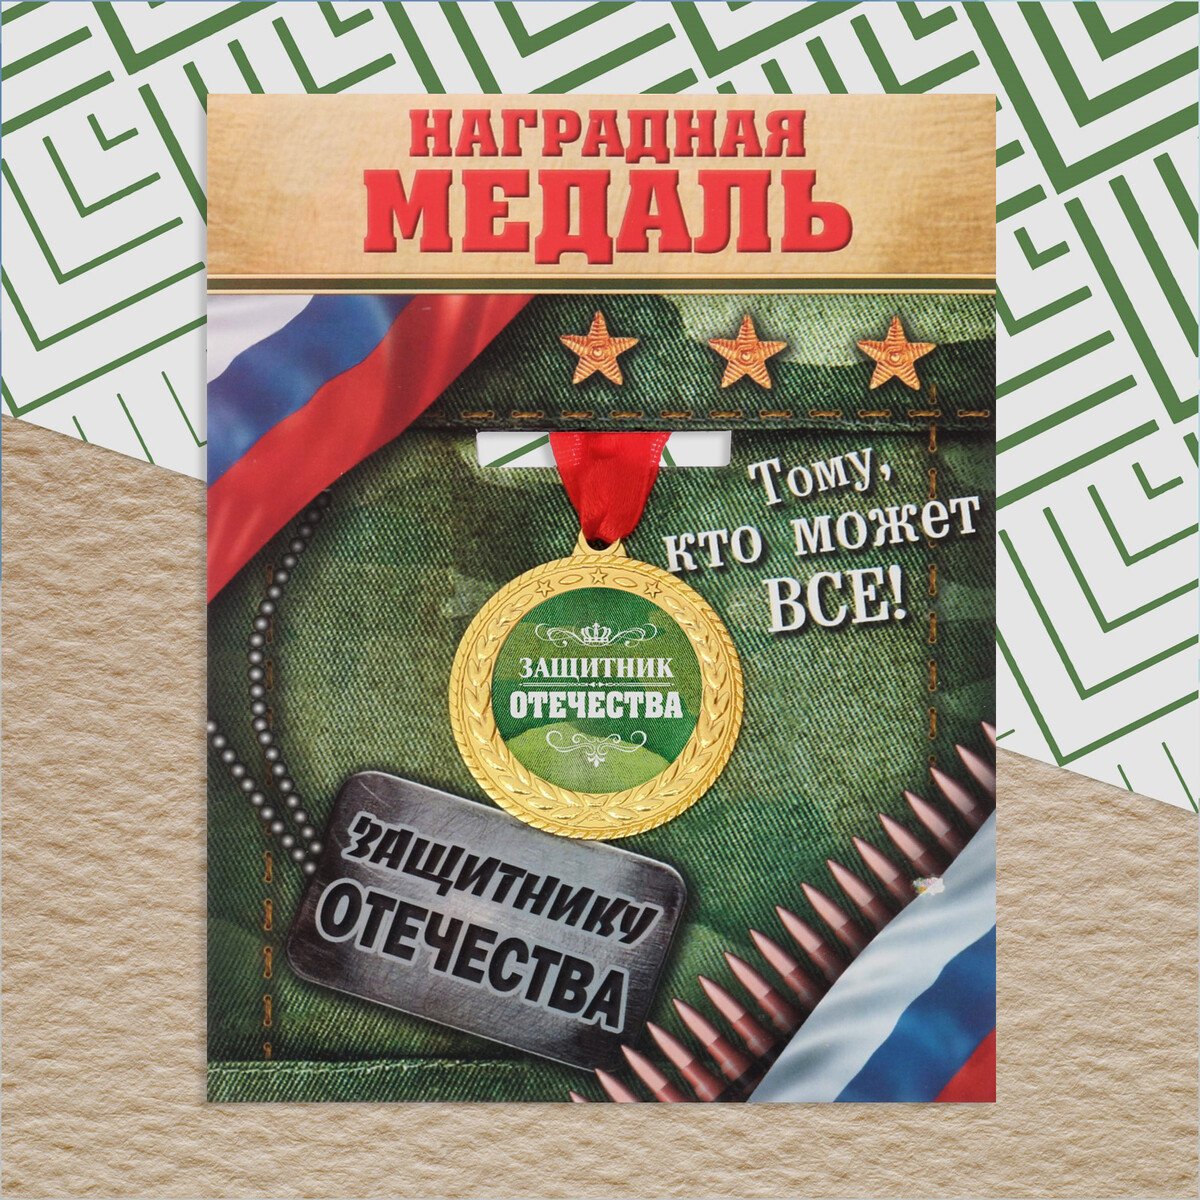 Медаль военная серия военная академия ркка от троцкого до ворошилова